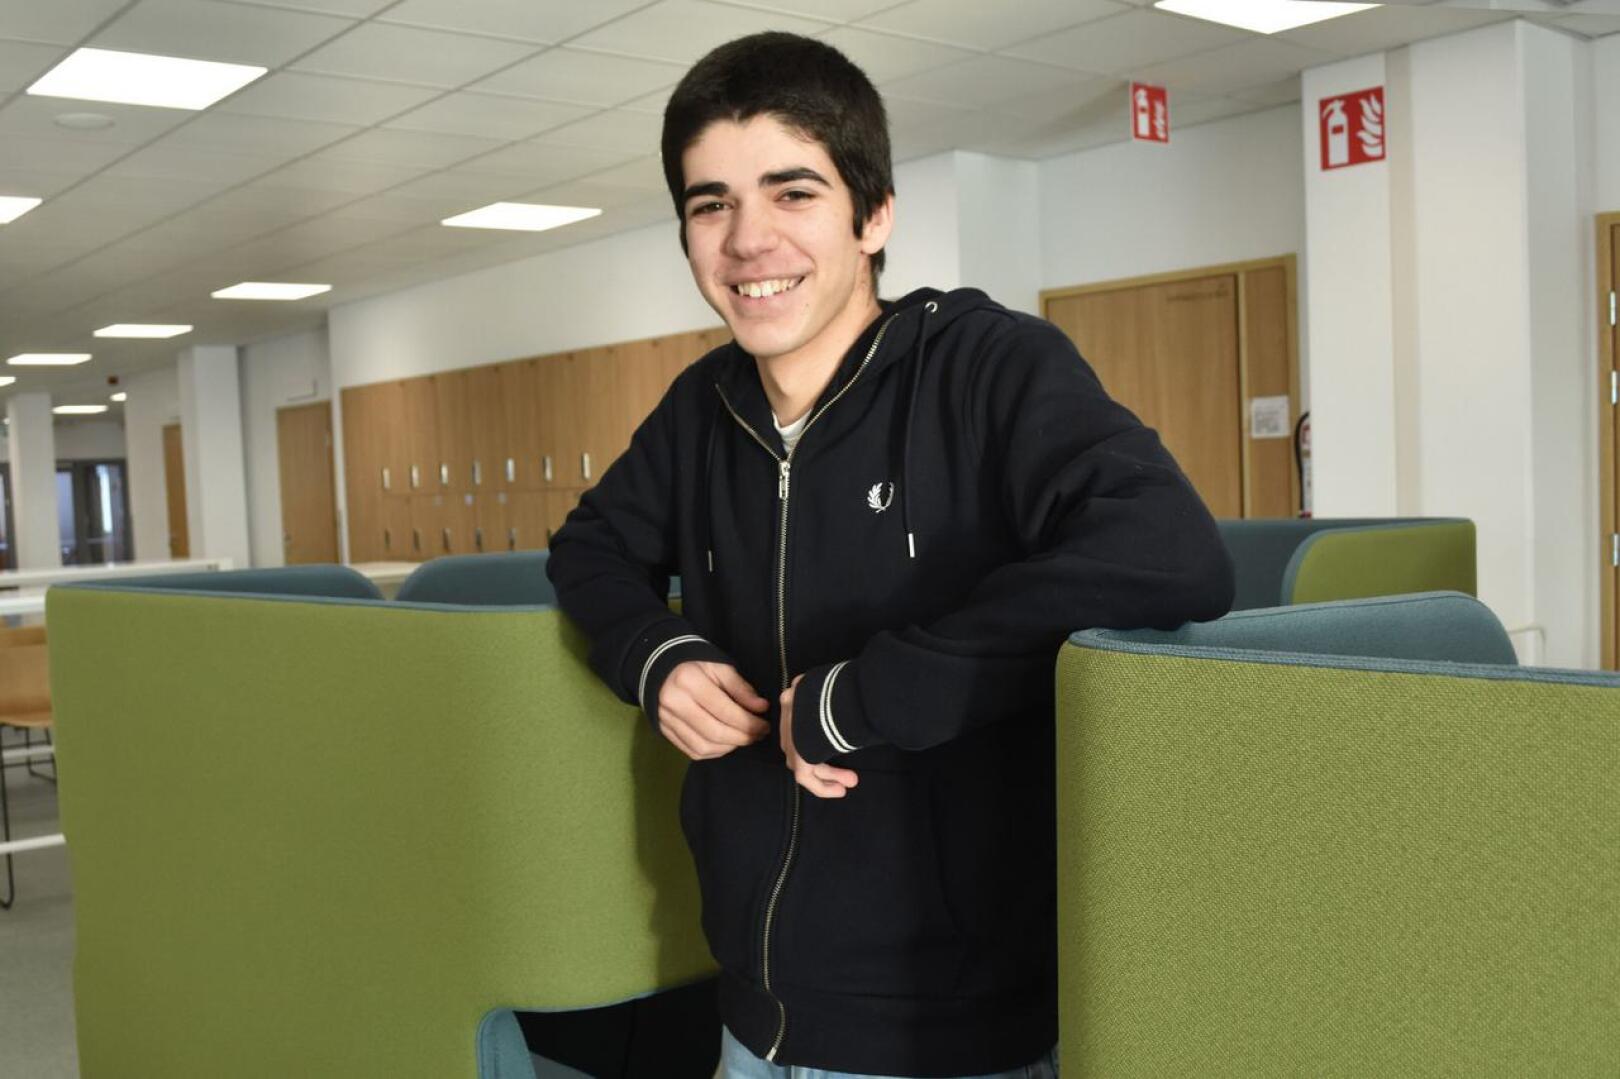 Portugalilainen André Carvalho on opiskellut Haapaveden lukiossa vaihto-oppilaana nyt puoli vuotta.  Hän tuumii koko koulusysteemin olevan Suomessa erilainen kuin kotimaassaan. Suurimpana erona maiden välillä on se, että täällä koulussa käytetään tietokoneita. 